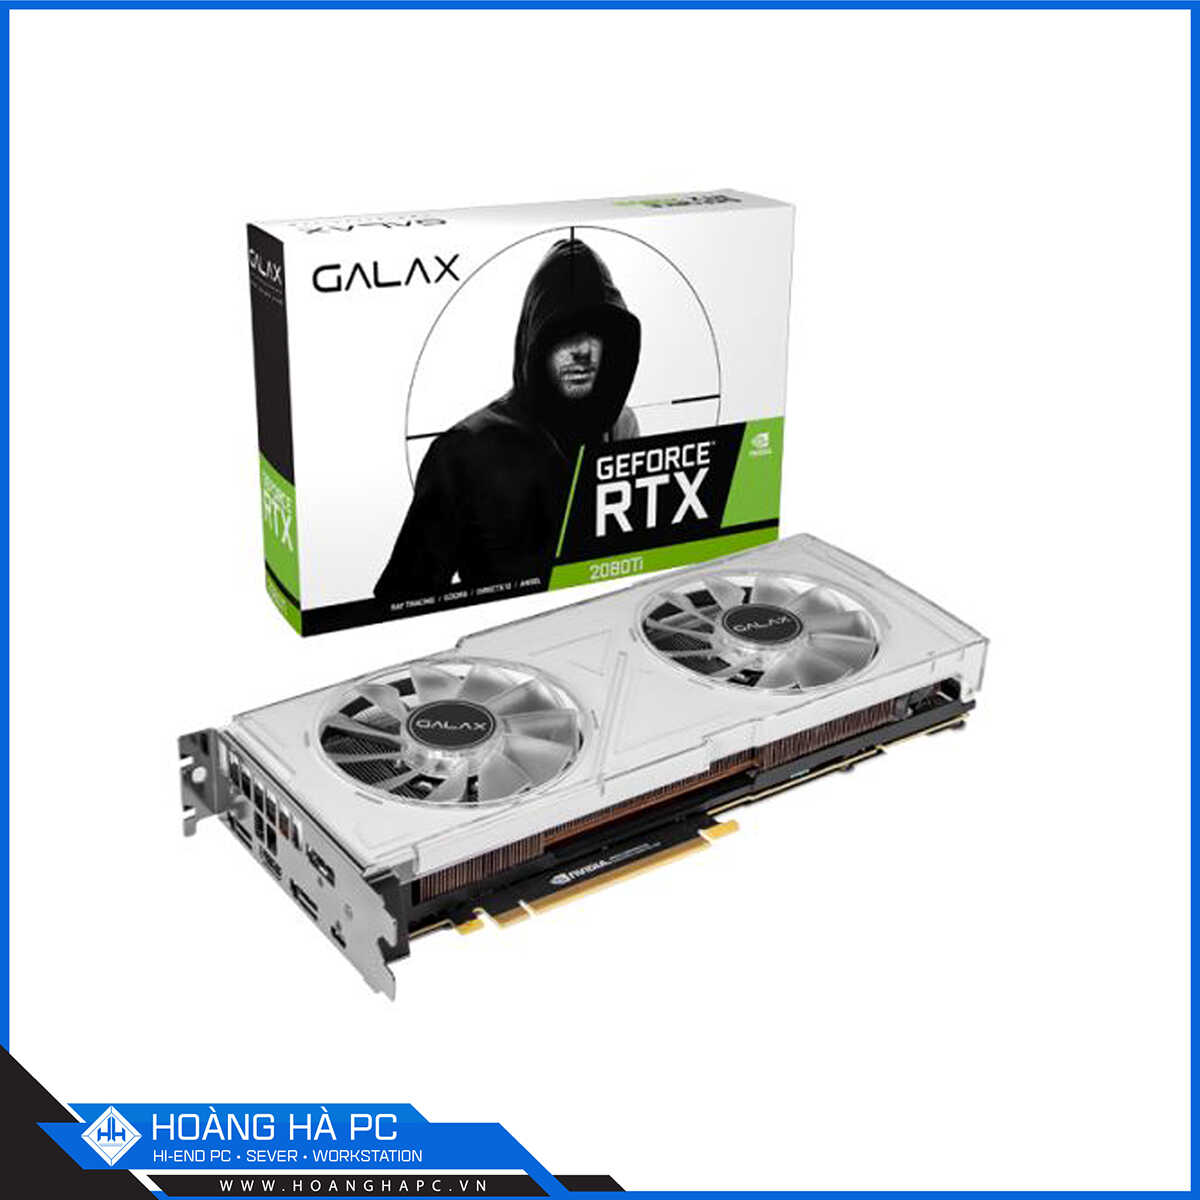 Galax GeForce RTX 2080 Ti OC 11GB GDDR6 White